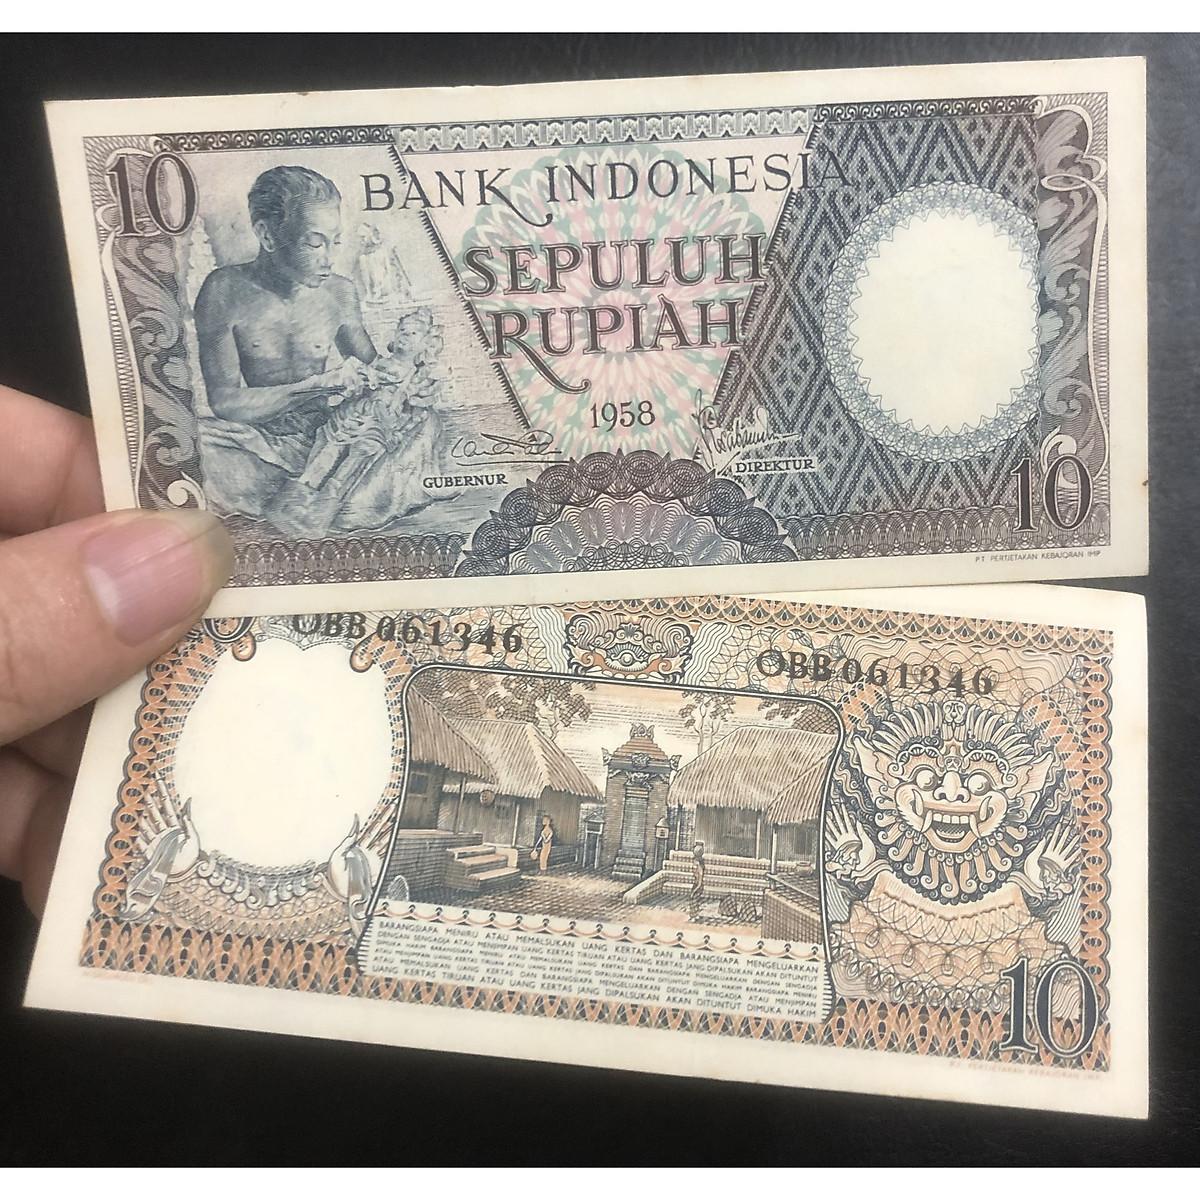 Tiền châu Á, 10 Rupiah Indonesia 1958, có phơi bảo quản sang trọng đi kèm